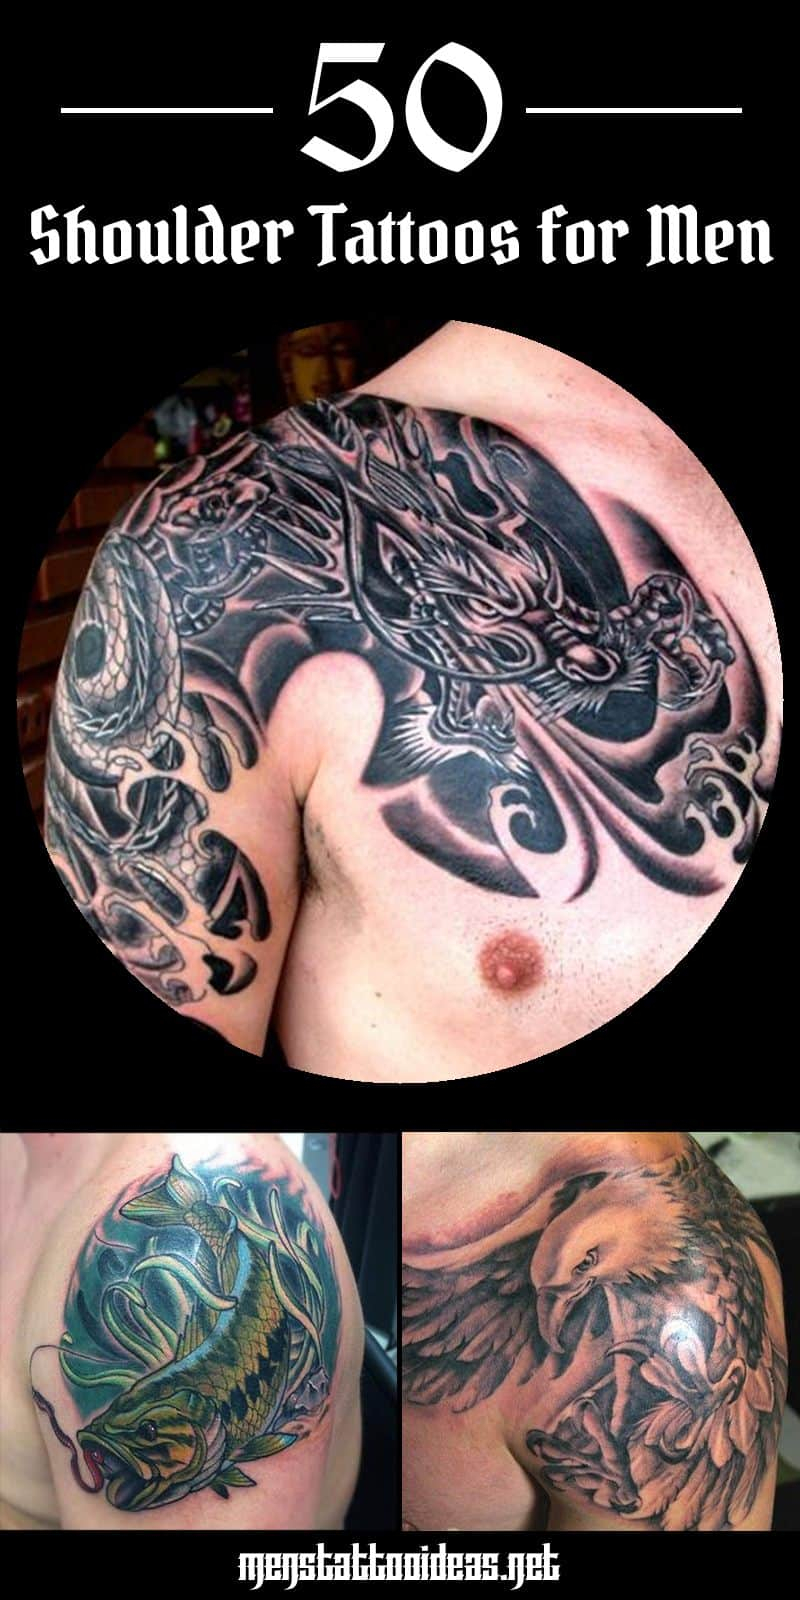 Shoulder Tattoos For Men Designs On Shoulder For Guys regarding dimensions 800 X 1600